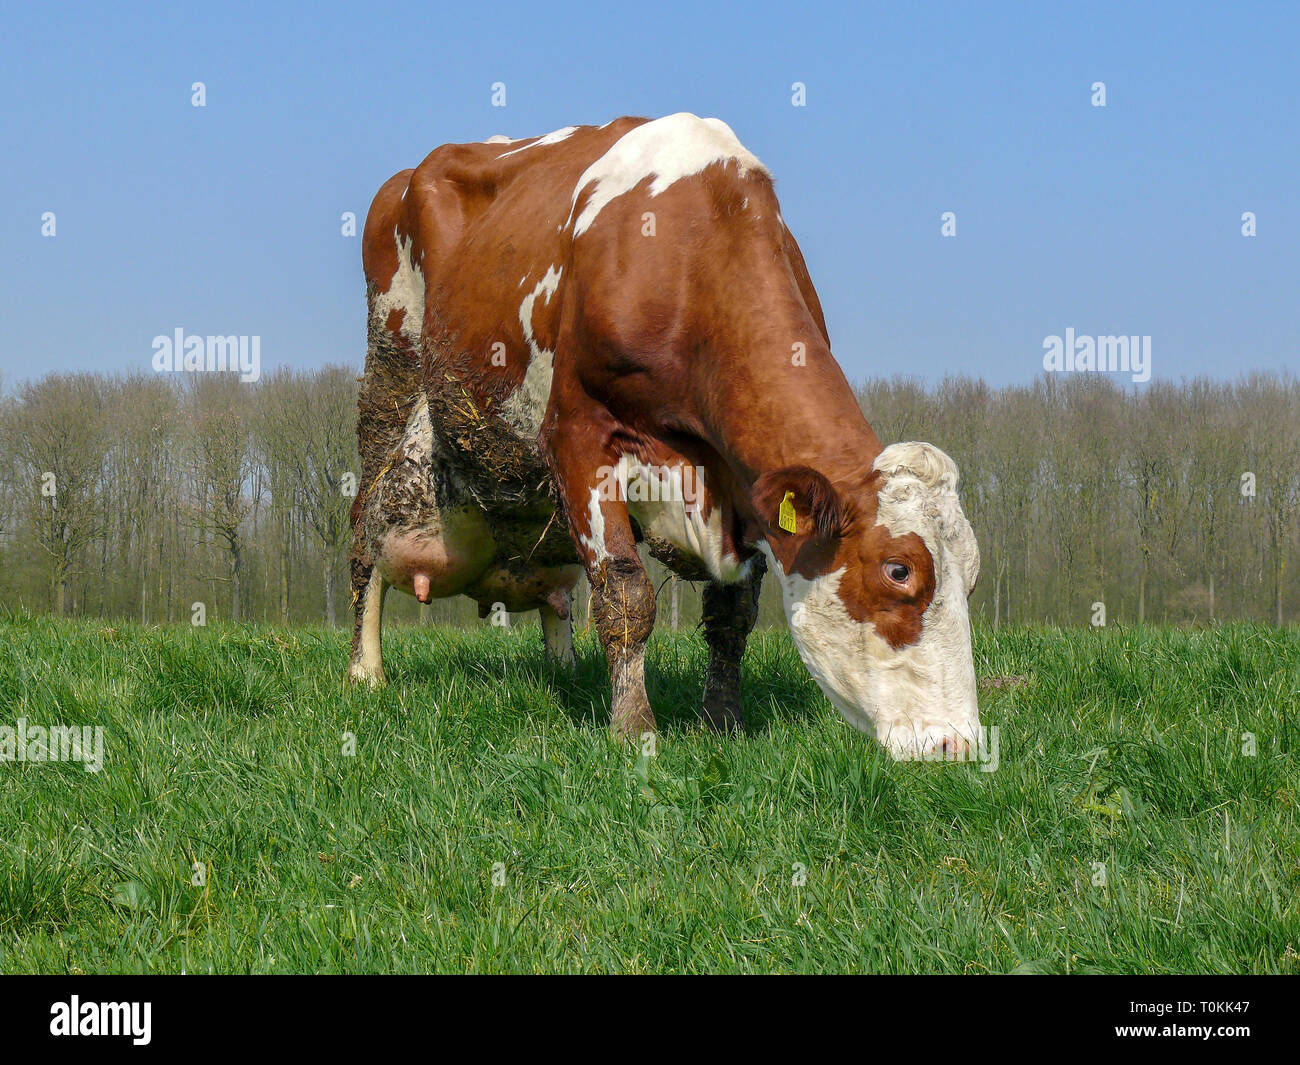 La vaca roja y blanca, con grandes ubres, completo con paja y suciedad, estiércol de ganado de raza Holstein Frisona, con una pastura permanente en el fondo una ro Foto de stock